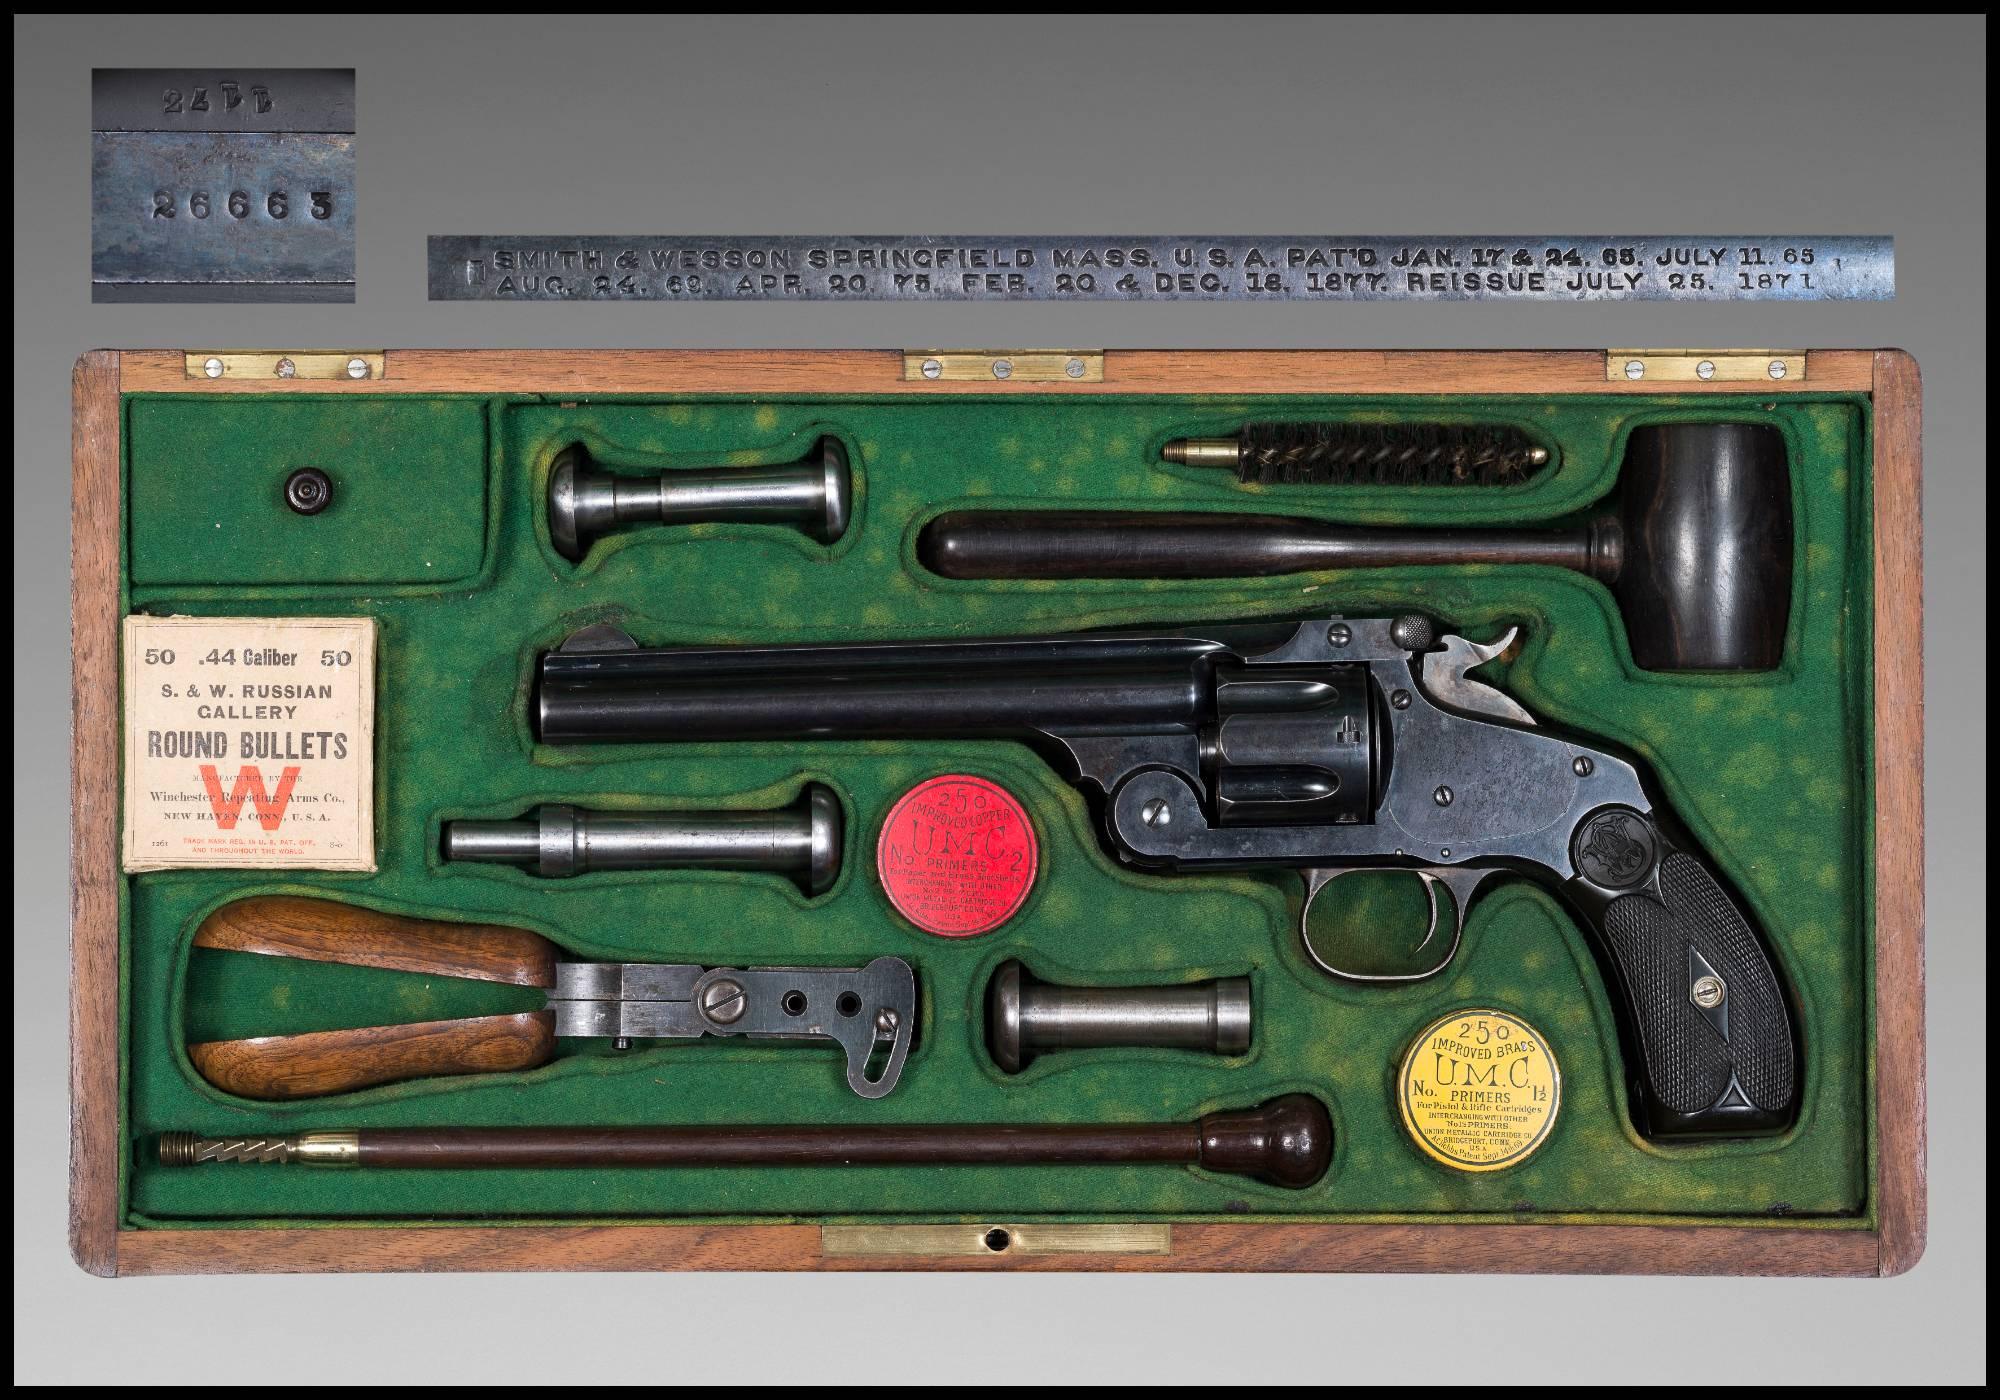 Ensemble original exceptionnel et complet de revolvers Smith & Wesson
modèle 44 russe n.3.

Toutes les pièces sont originales et en superbe état.